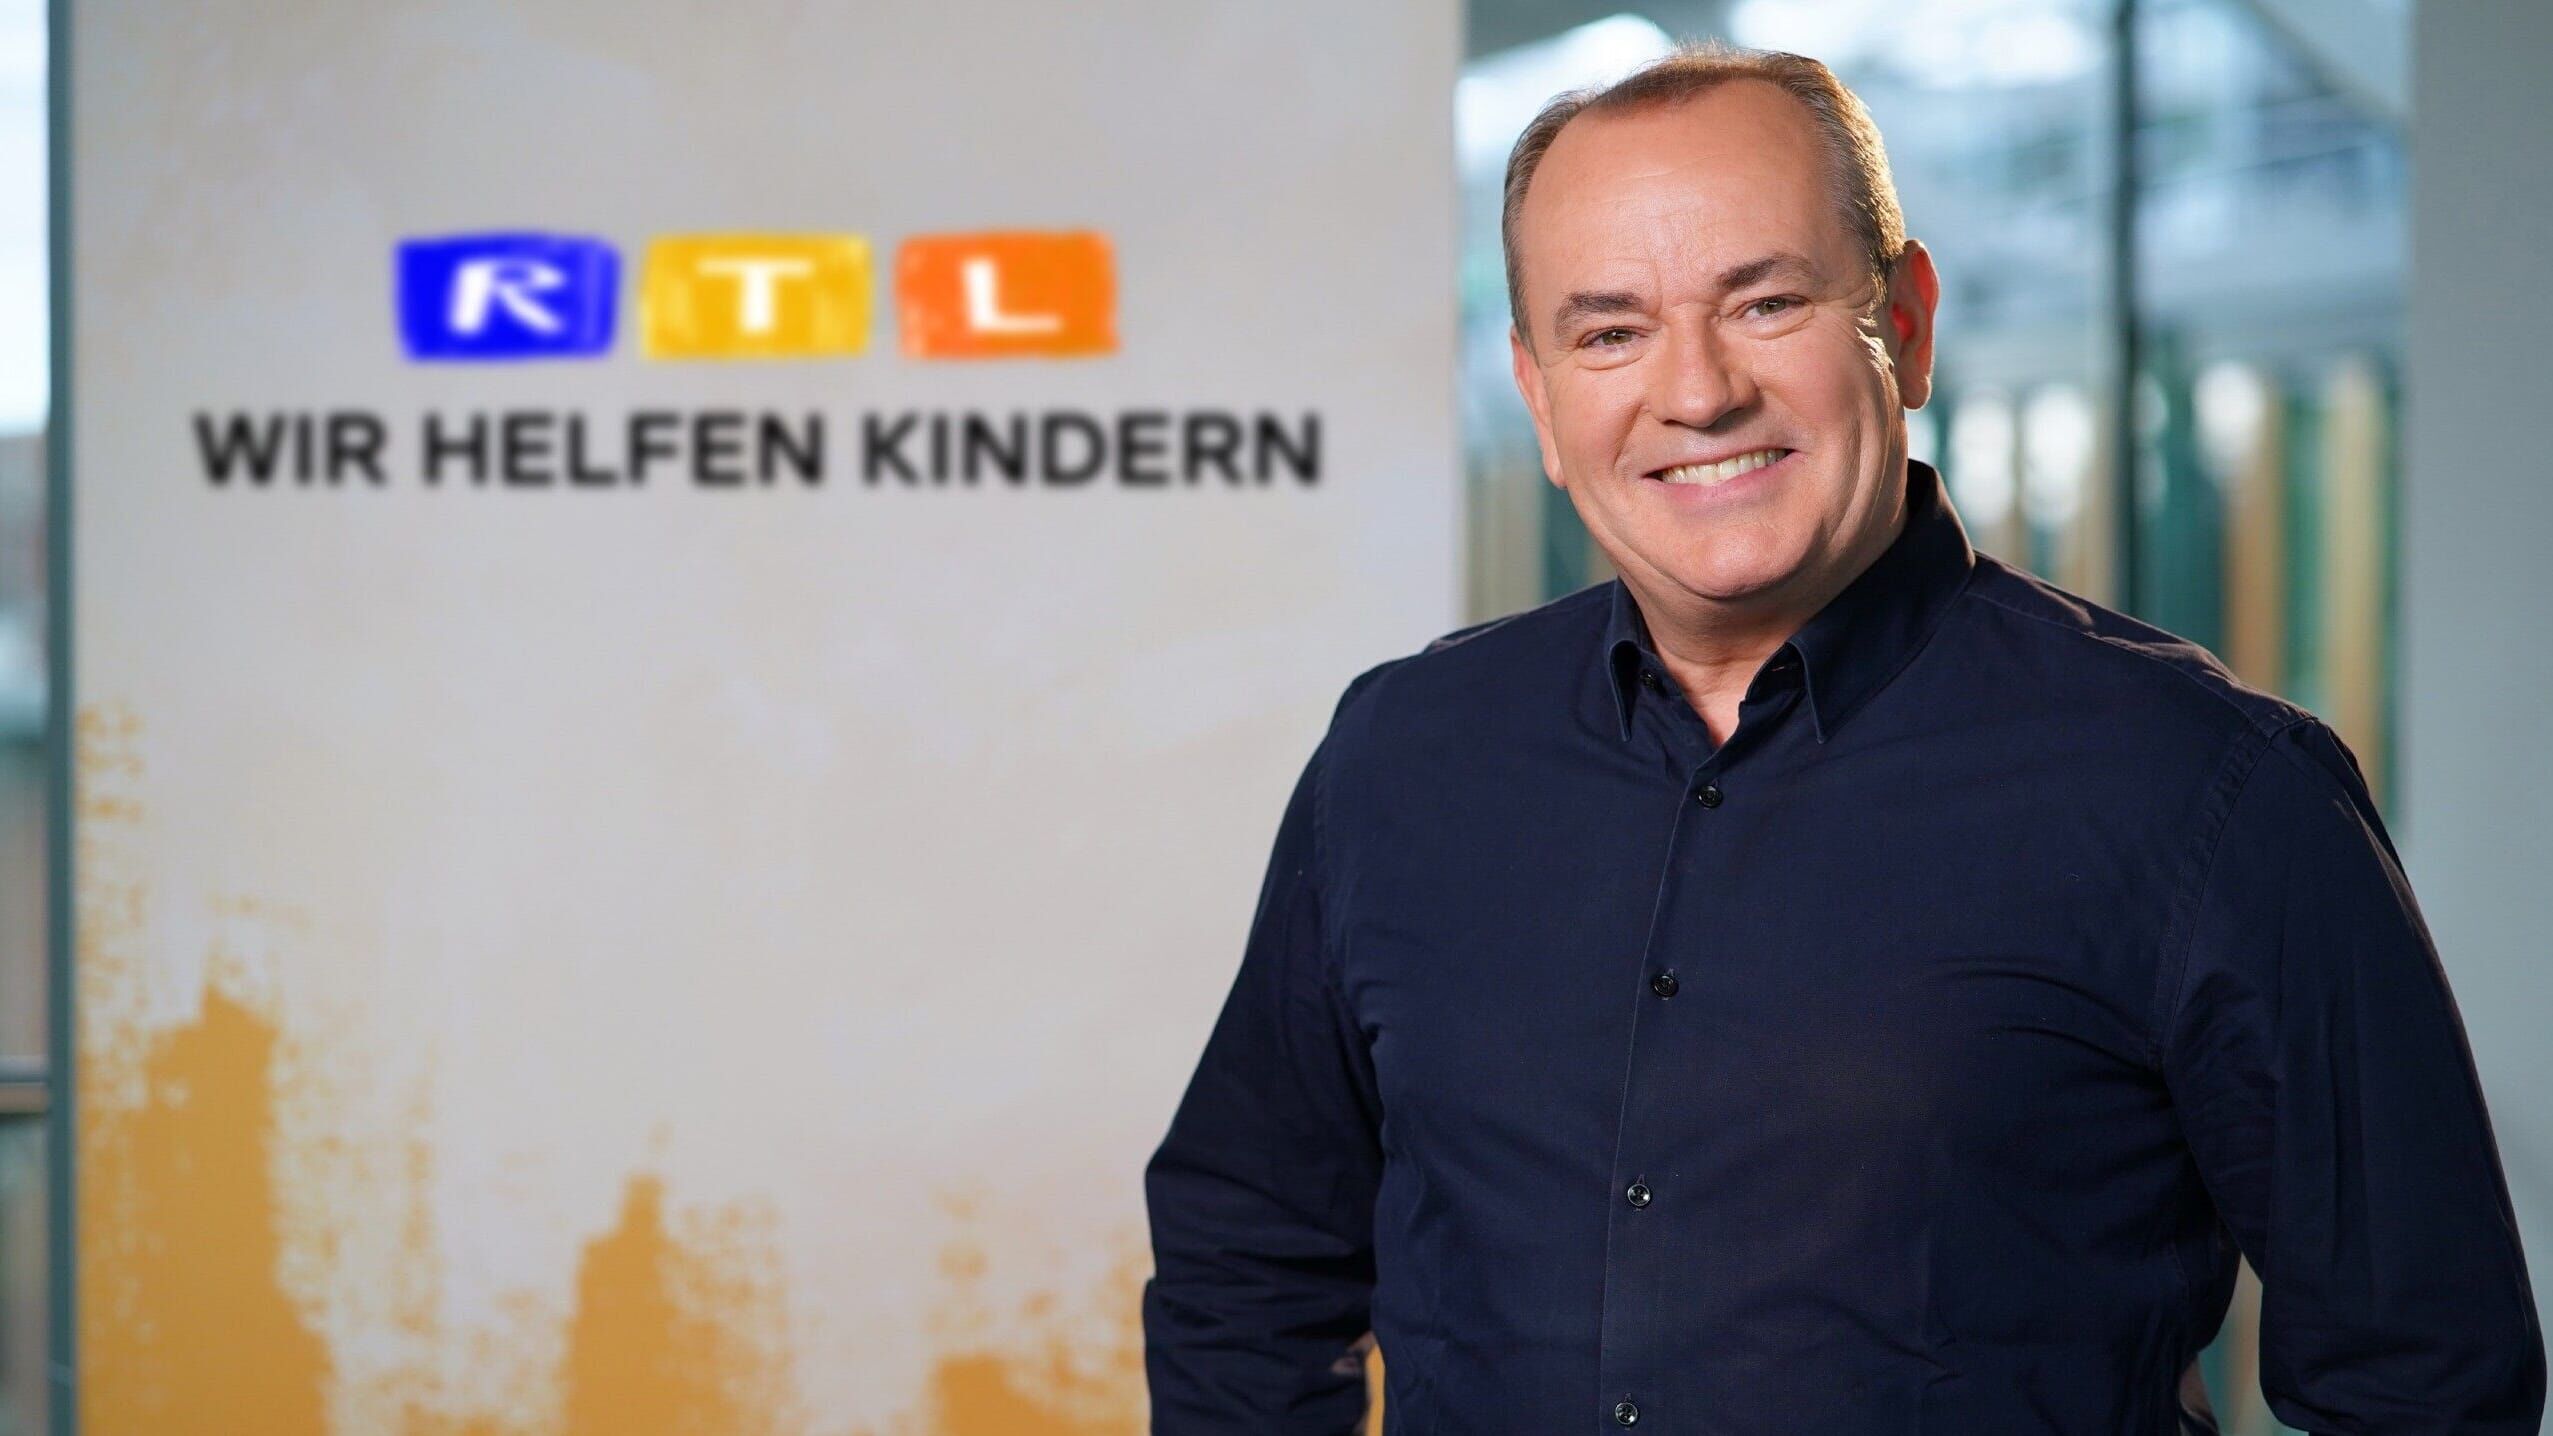 RTL Wir helfen Kindern – Update